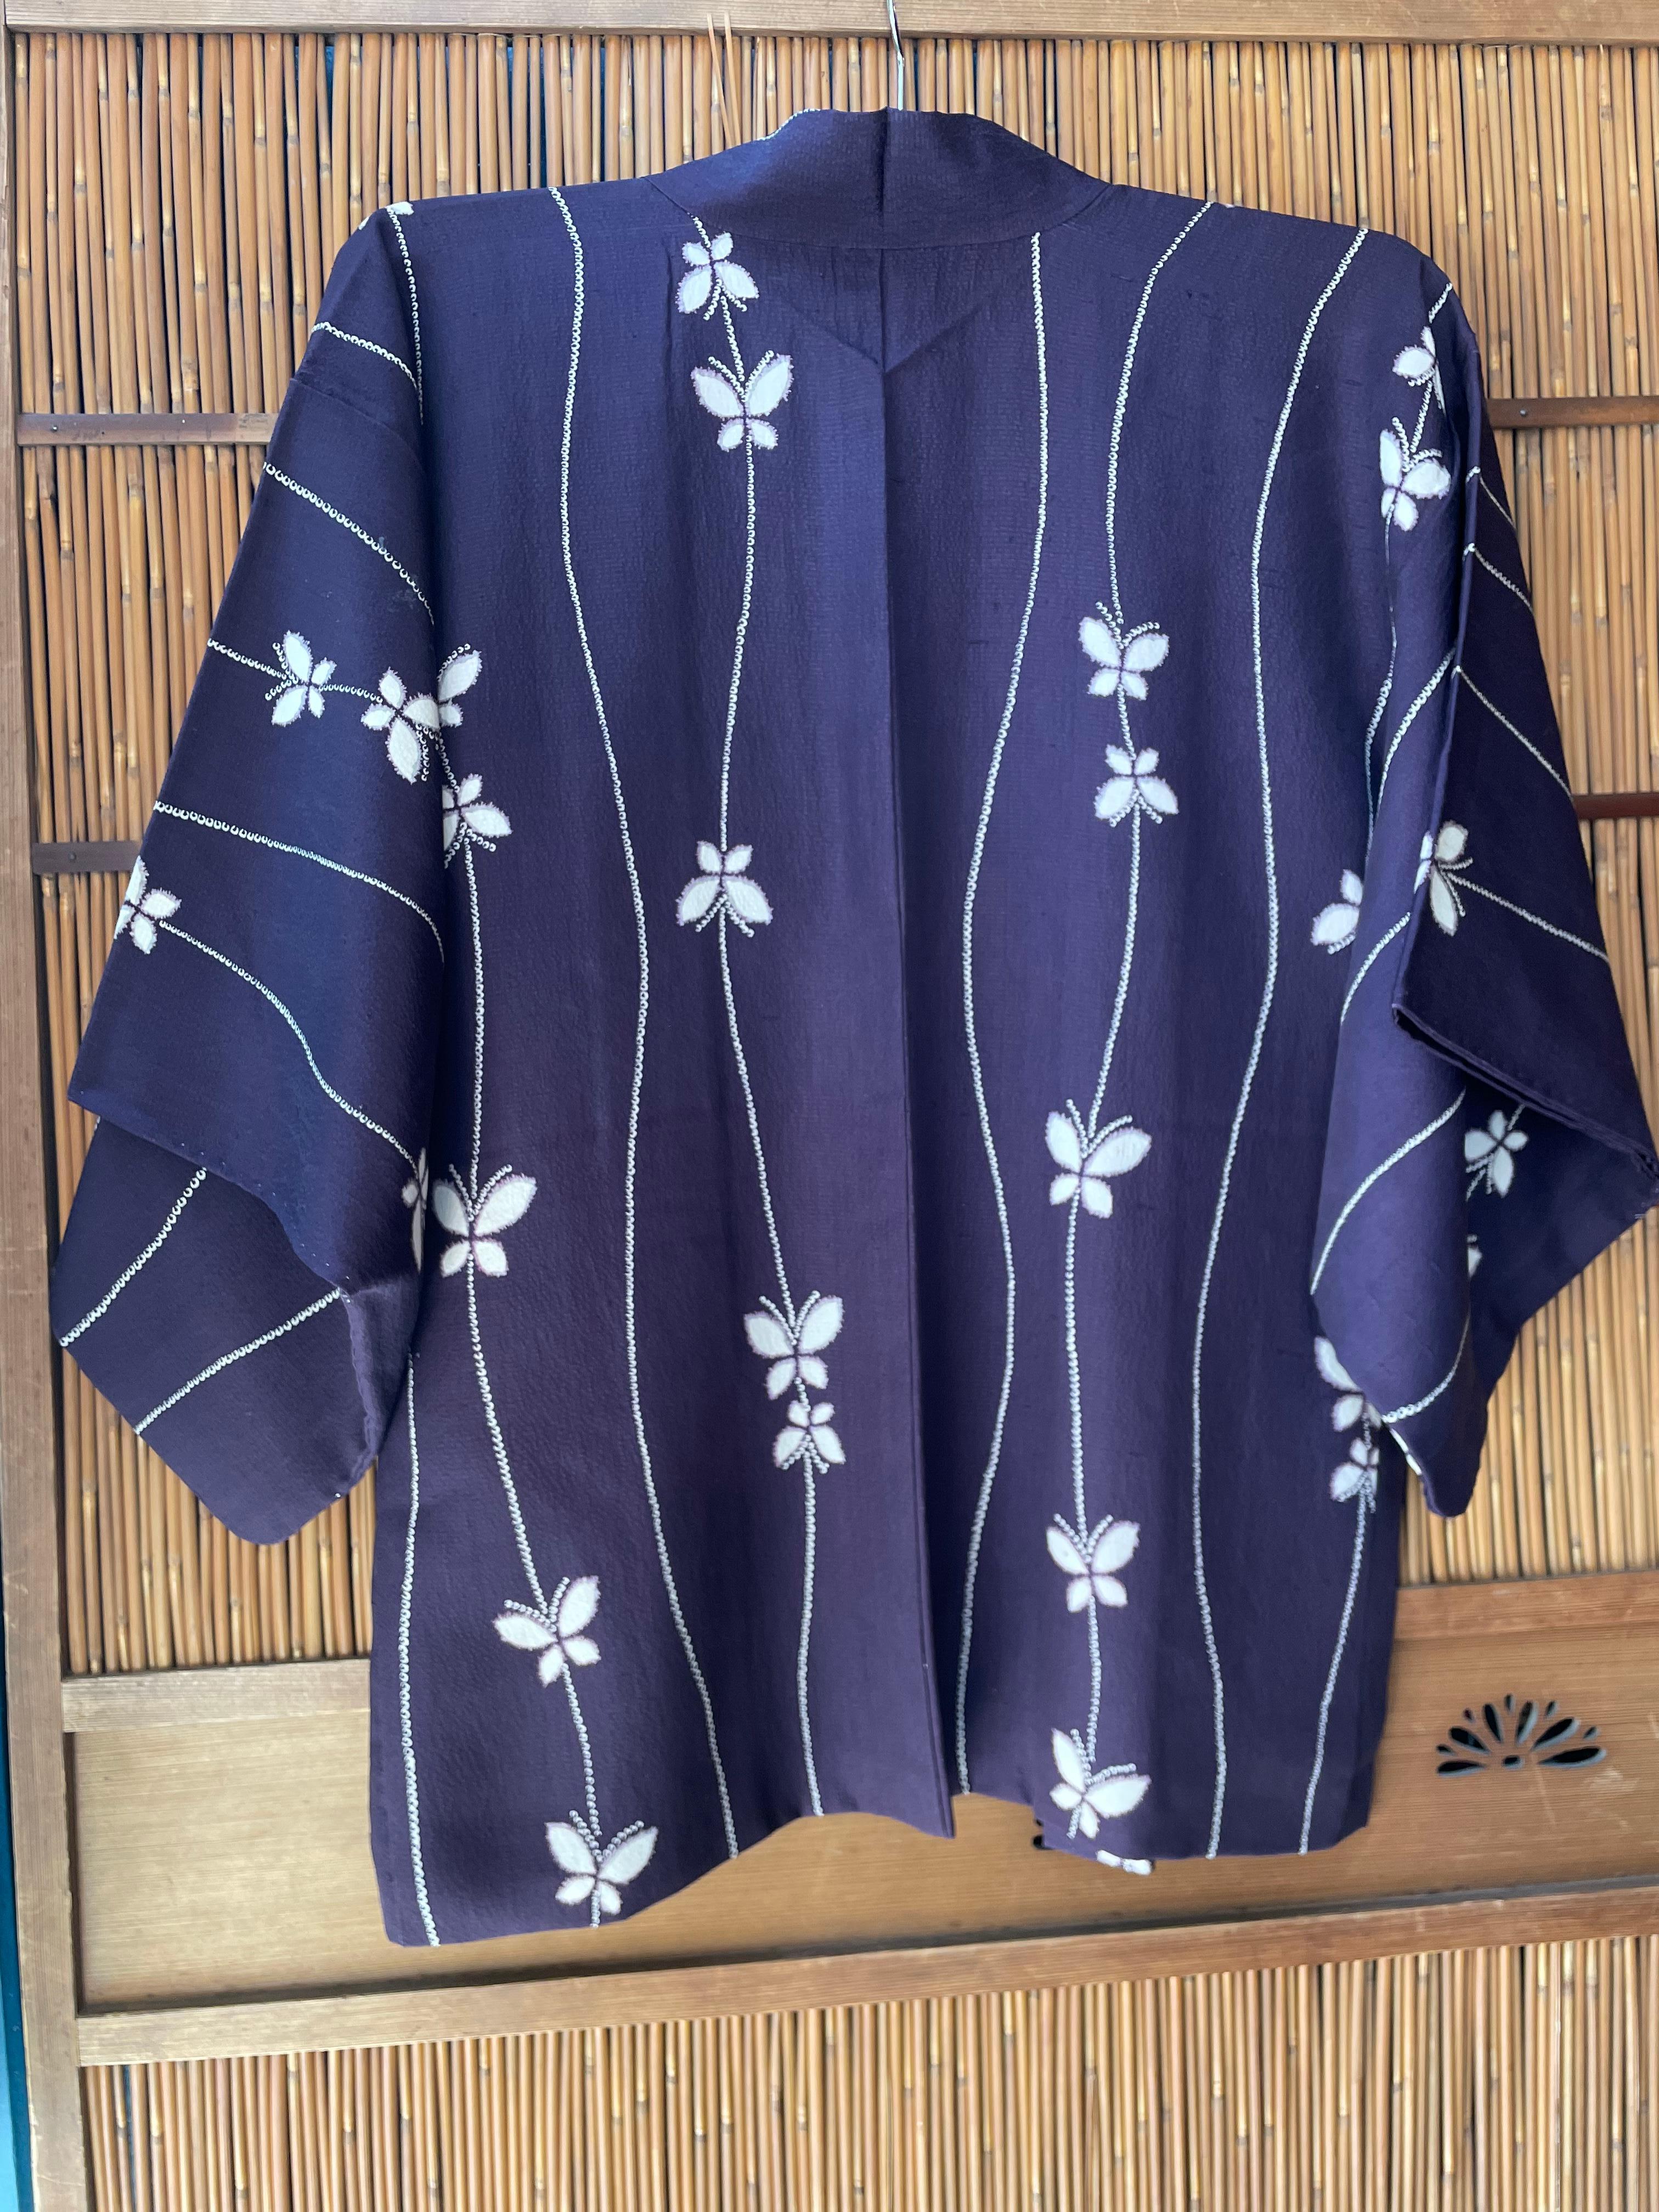 Dies ist eine Jacke für Frauen, die in Japan Haori genannt wird. Sie wurde in den 1940er Jahren in der Showa-Ära hergestellt.

-Details-
Design/One: Schmetterlinge 
Stoff: Seide
Epoche: Showa (1940 - 1950)
Farbe: lila und weiß

Abmessungen